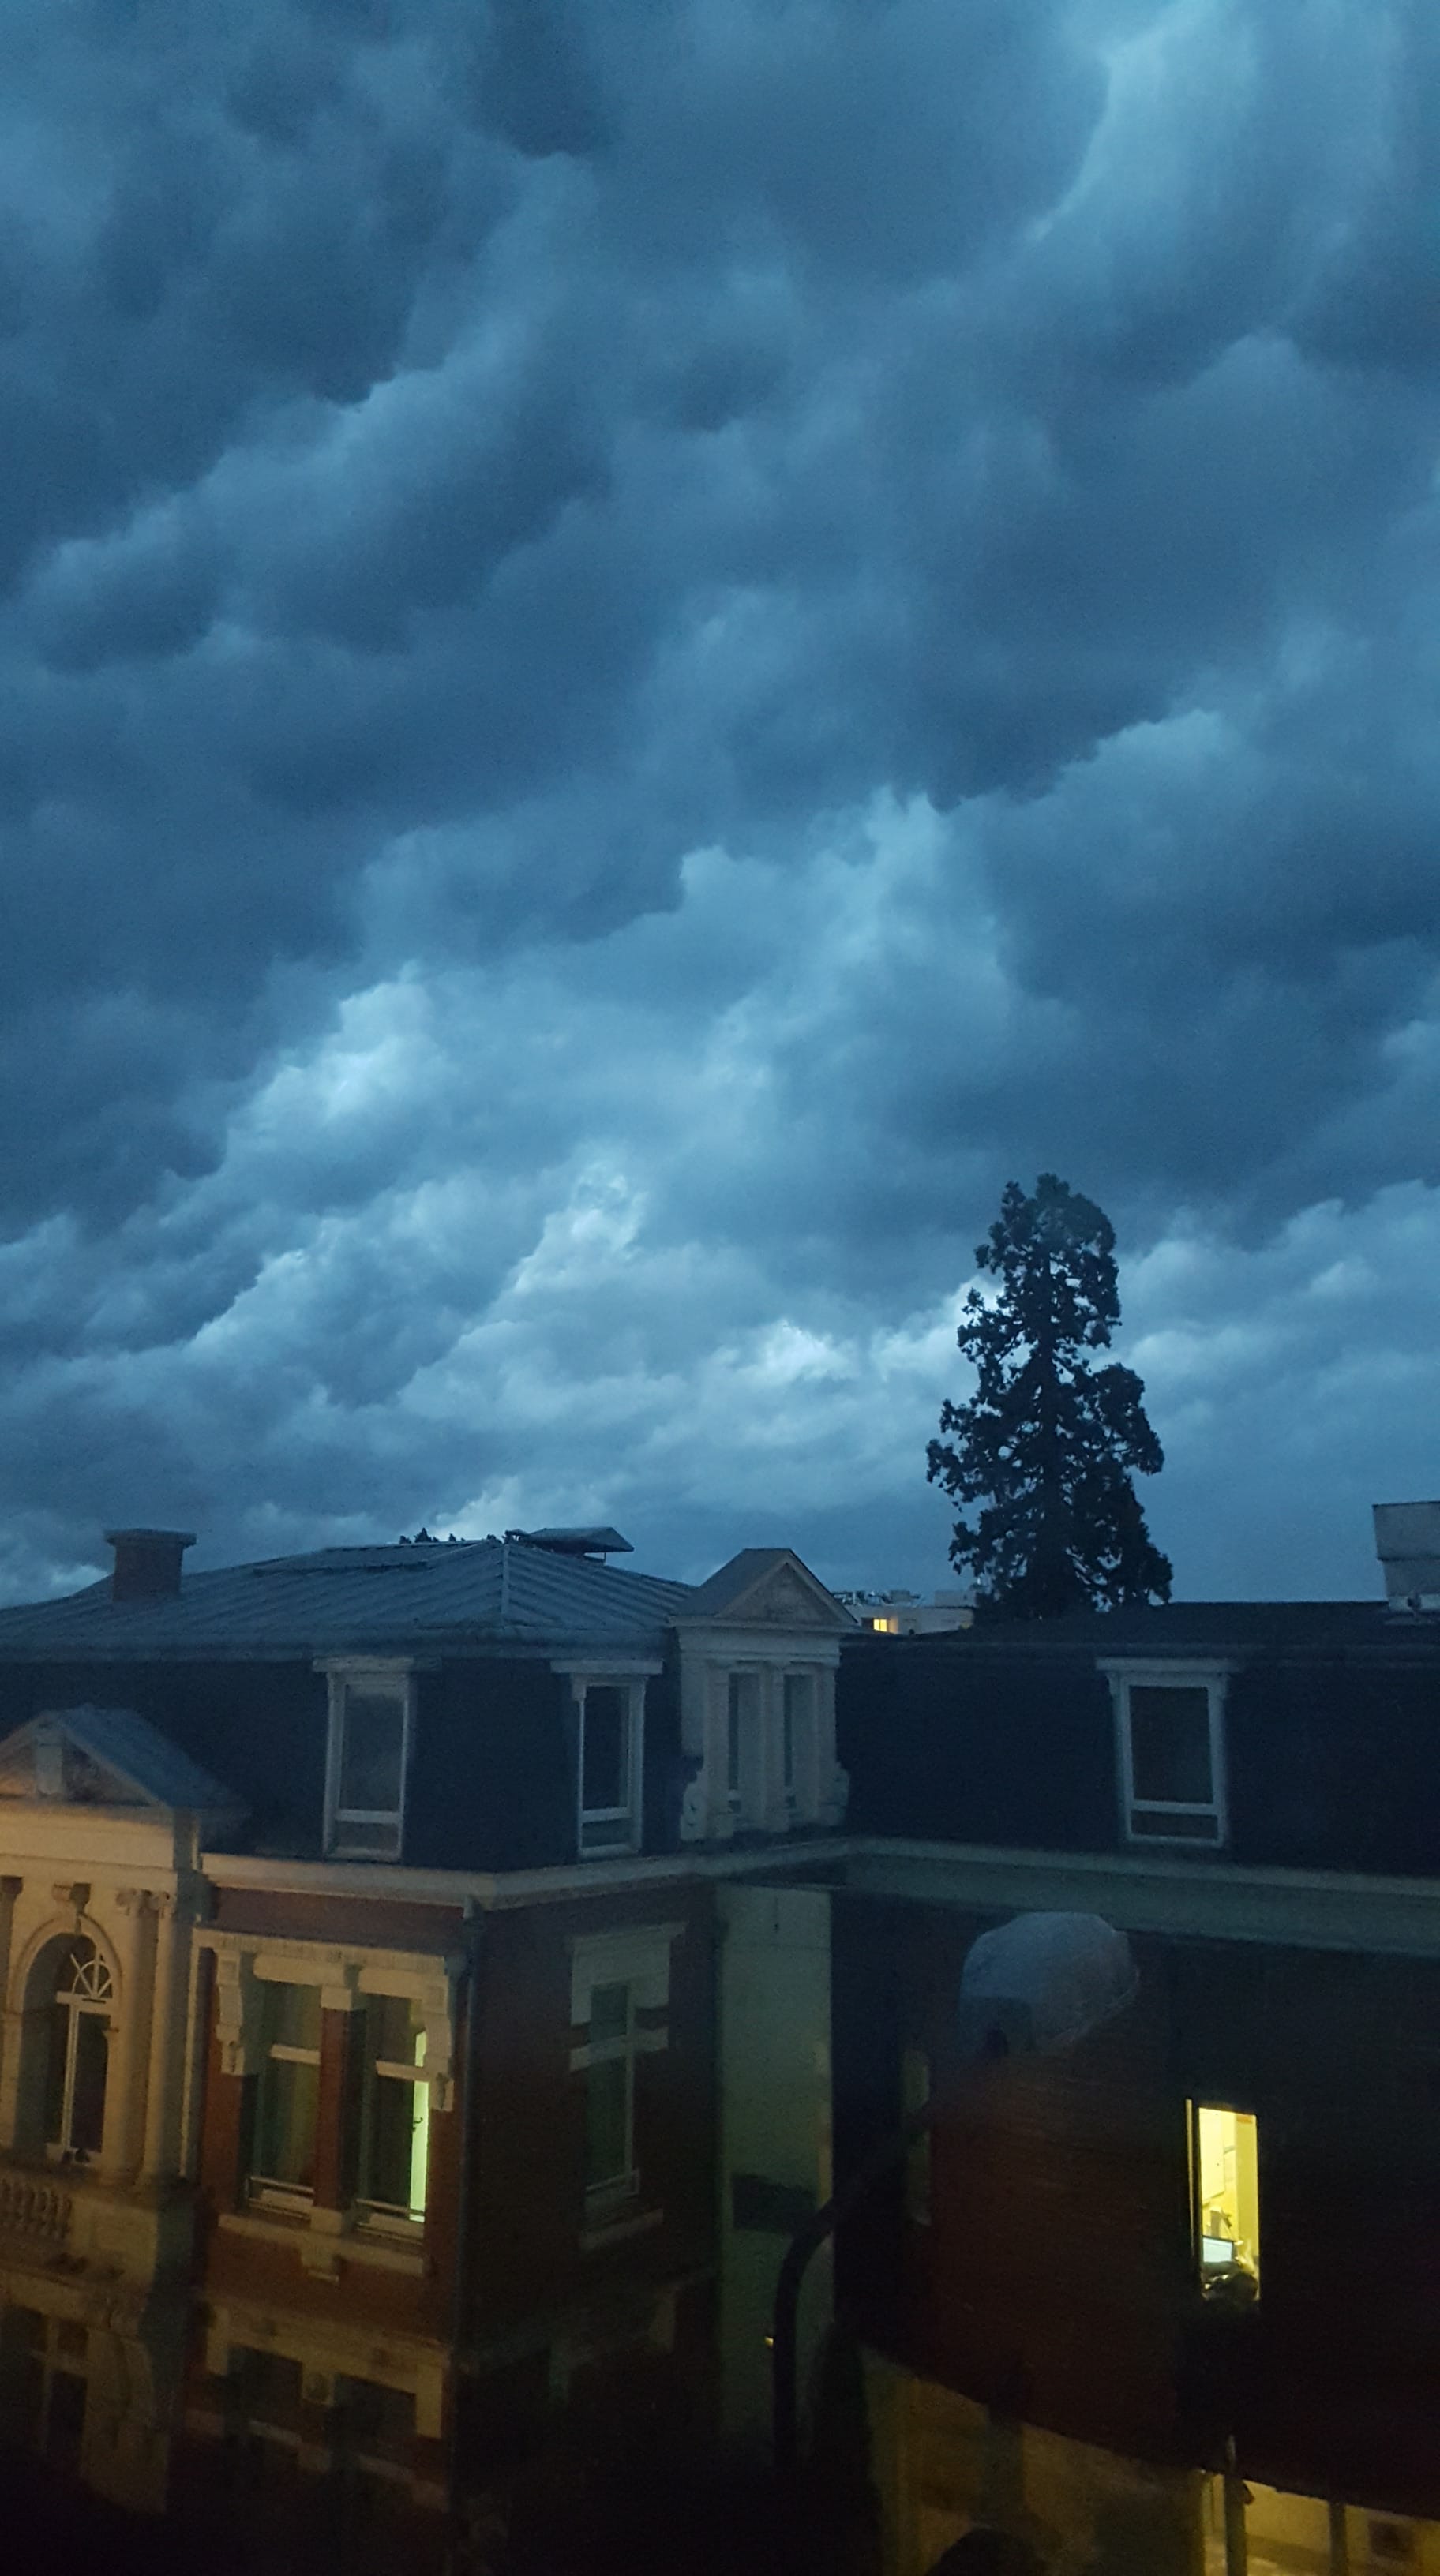 Ciel au dessus de Saint Amand les Eaux à l'arrivée d'un orage fort - 24/05/2018 22:30 - Laetitia Leclercq